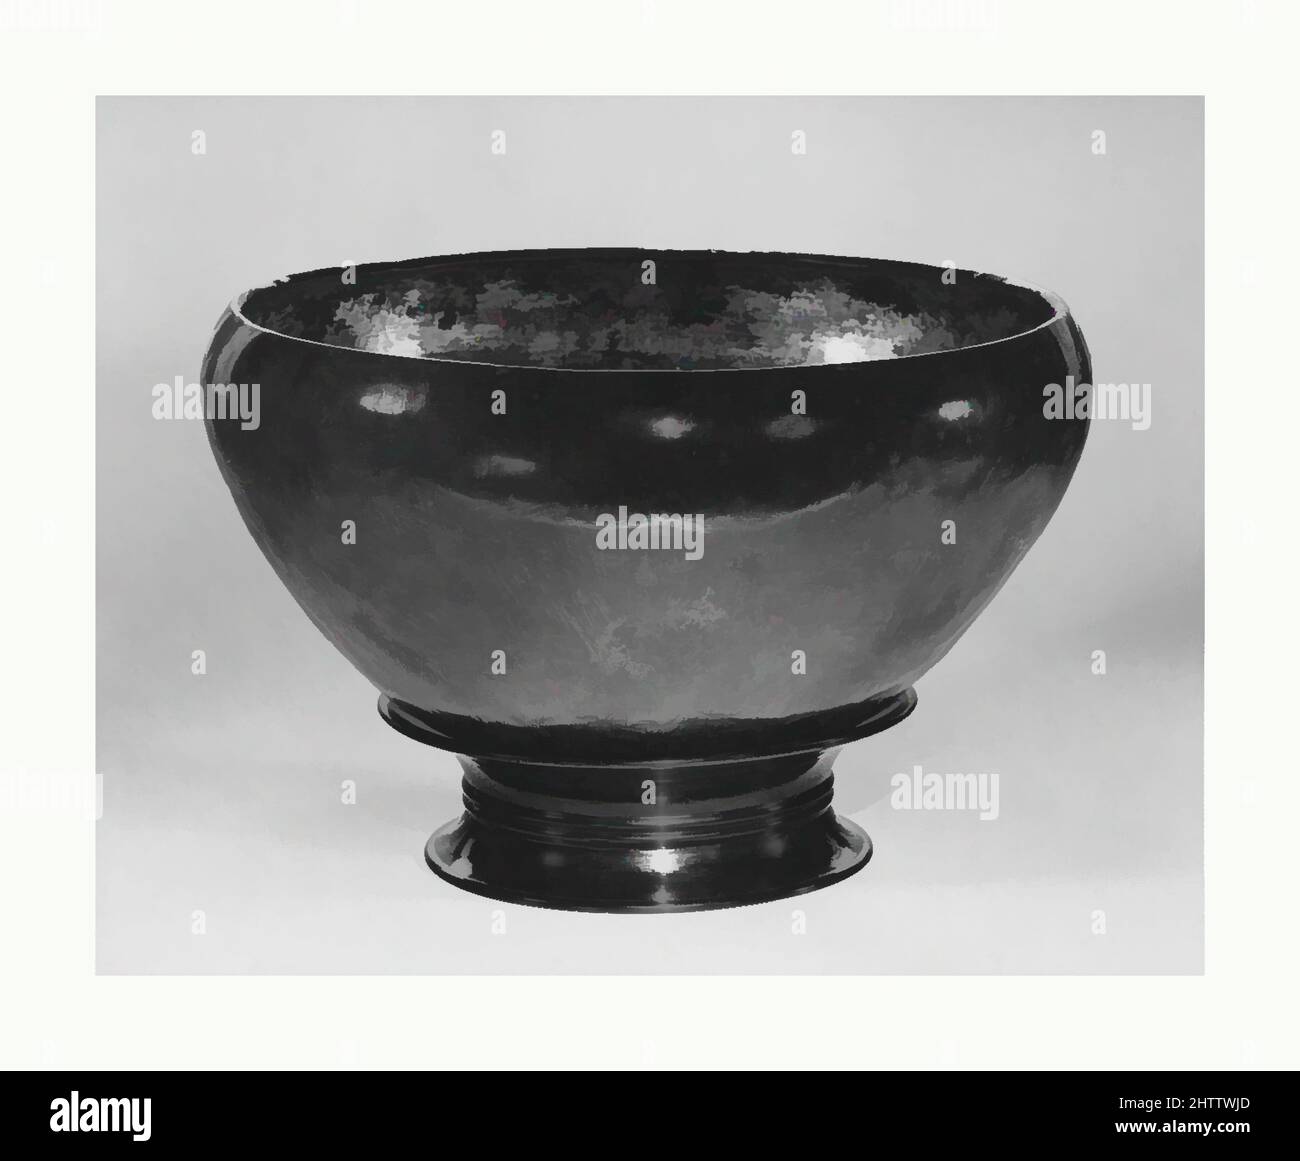 Art inspiré par le bouddhiste Ceremonial Alms Bowl, 金銅鉢, période Nara (710–794), Japon, bronze doré, H. 5 po (12,7 cm) ; diamètre 9 1/4 po (23,5 cm) ; diam. De la jante 9 po (22,9 cm), Metalwork, avec trois vêtements, un tabouret, et un filtre à eau, le bol d'alms était traditionnellement l'un des seuls, les œuvres classiques modernisées par Artotop avec une touche de modernité. Formes, couleur et valeur, impact visuel accrocheur sur l'art émotions par la liberté d'œuvres d'art d'une manière contemporaine. Un message intemporel qui cherche une nouvelle direction créative. Artistes qui se tournent vers le support numérique et créent le NFT Artotop Banque D'Images